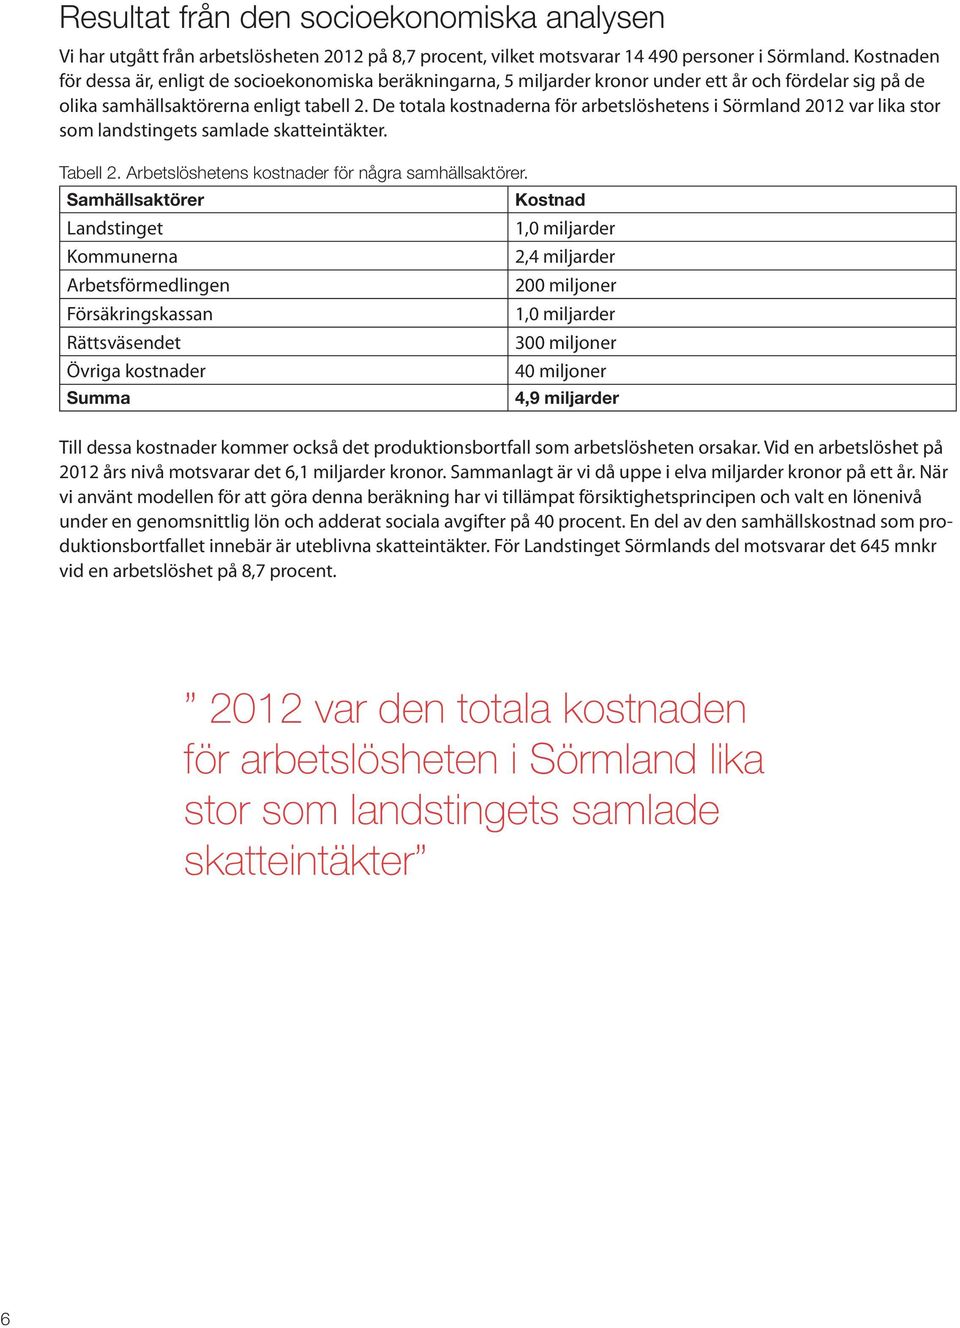 De totala kostnaderna för arbetslöshetens i Sörmland 2012 var lika stor som landstingets samlade skatteintäkter. Tabell 2. Arbetslöshetens kostnader för några samhällsaktörer.